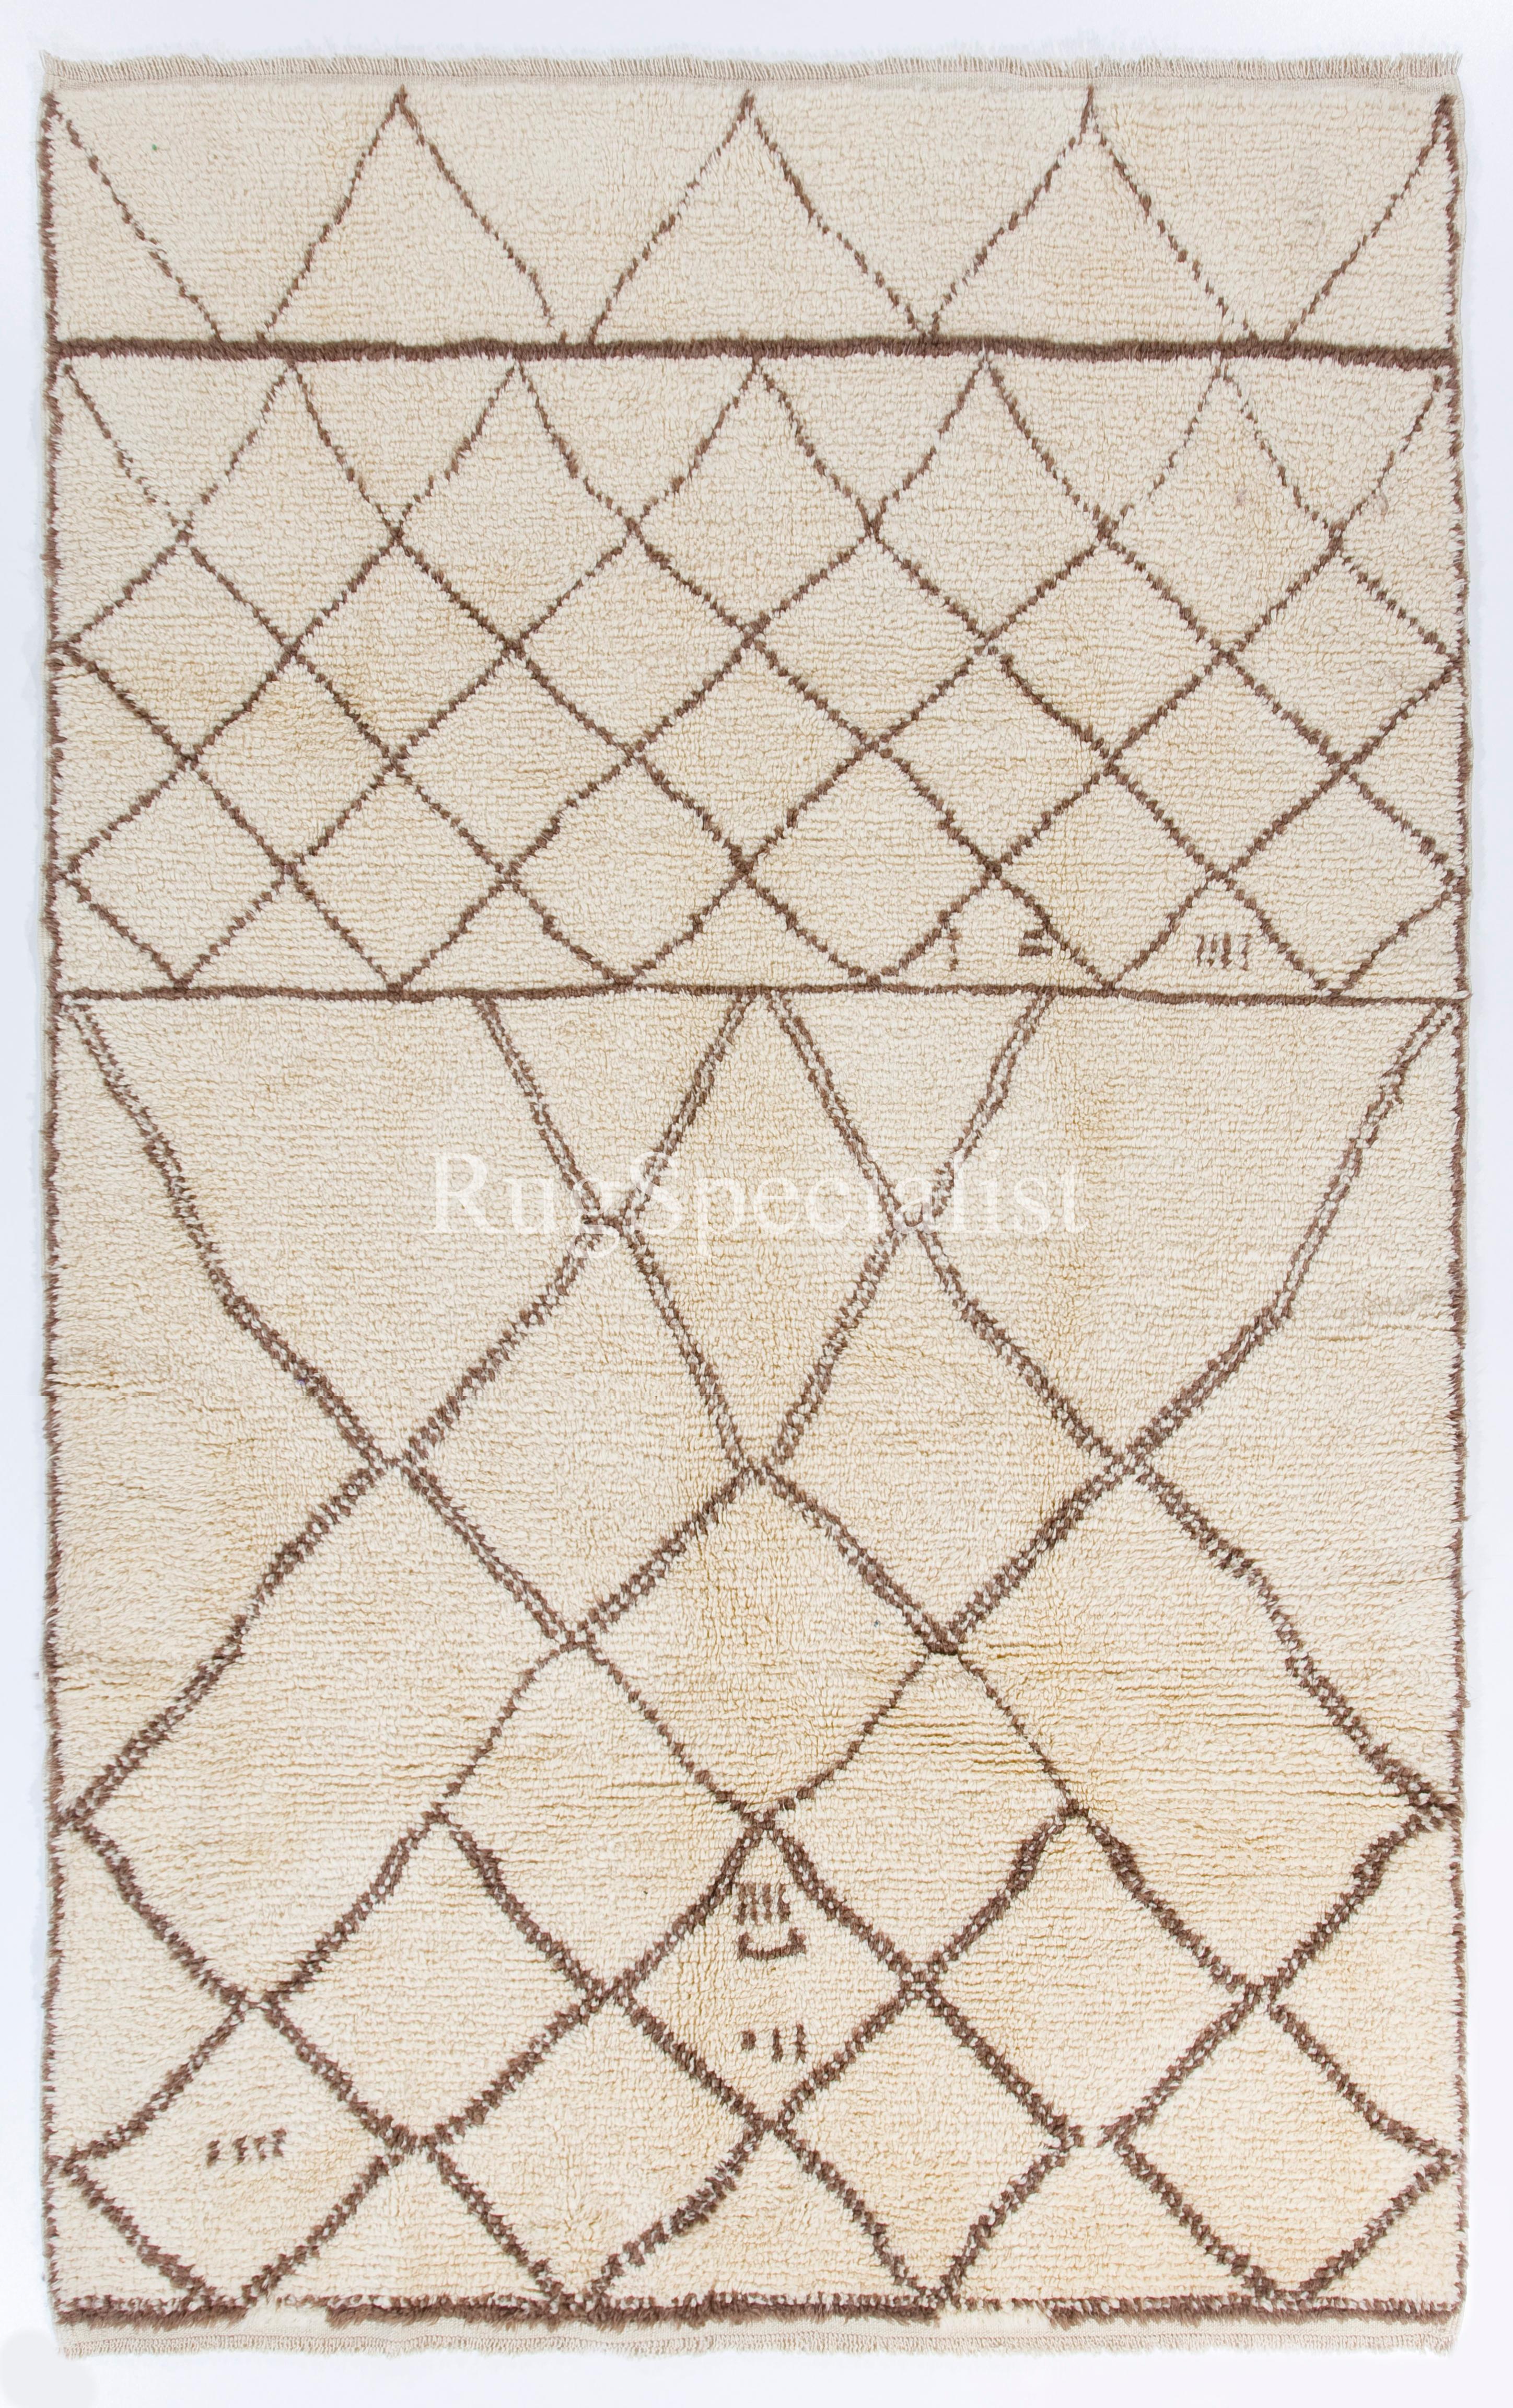 Ein moderner, handgeknüpfter marokkanischer Teppich aus ungefärbter Wolle. 
Größe: 6 x 9,4 ft.
Sehr weich und bequem, ein Vergnügen, darauf zu gehen oder zu liegen. 
Erhältlich so wie er ist, in verschiedenen anderen Größen oder nach Maß in jeder